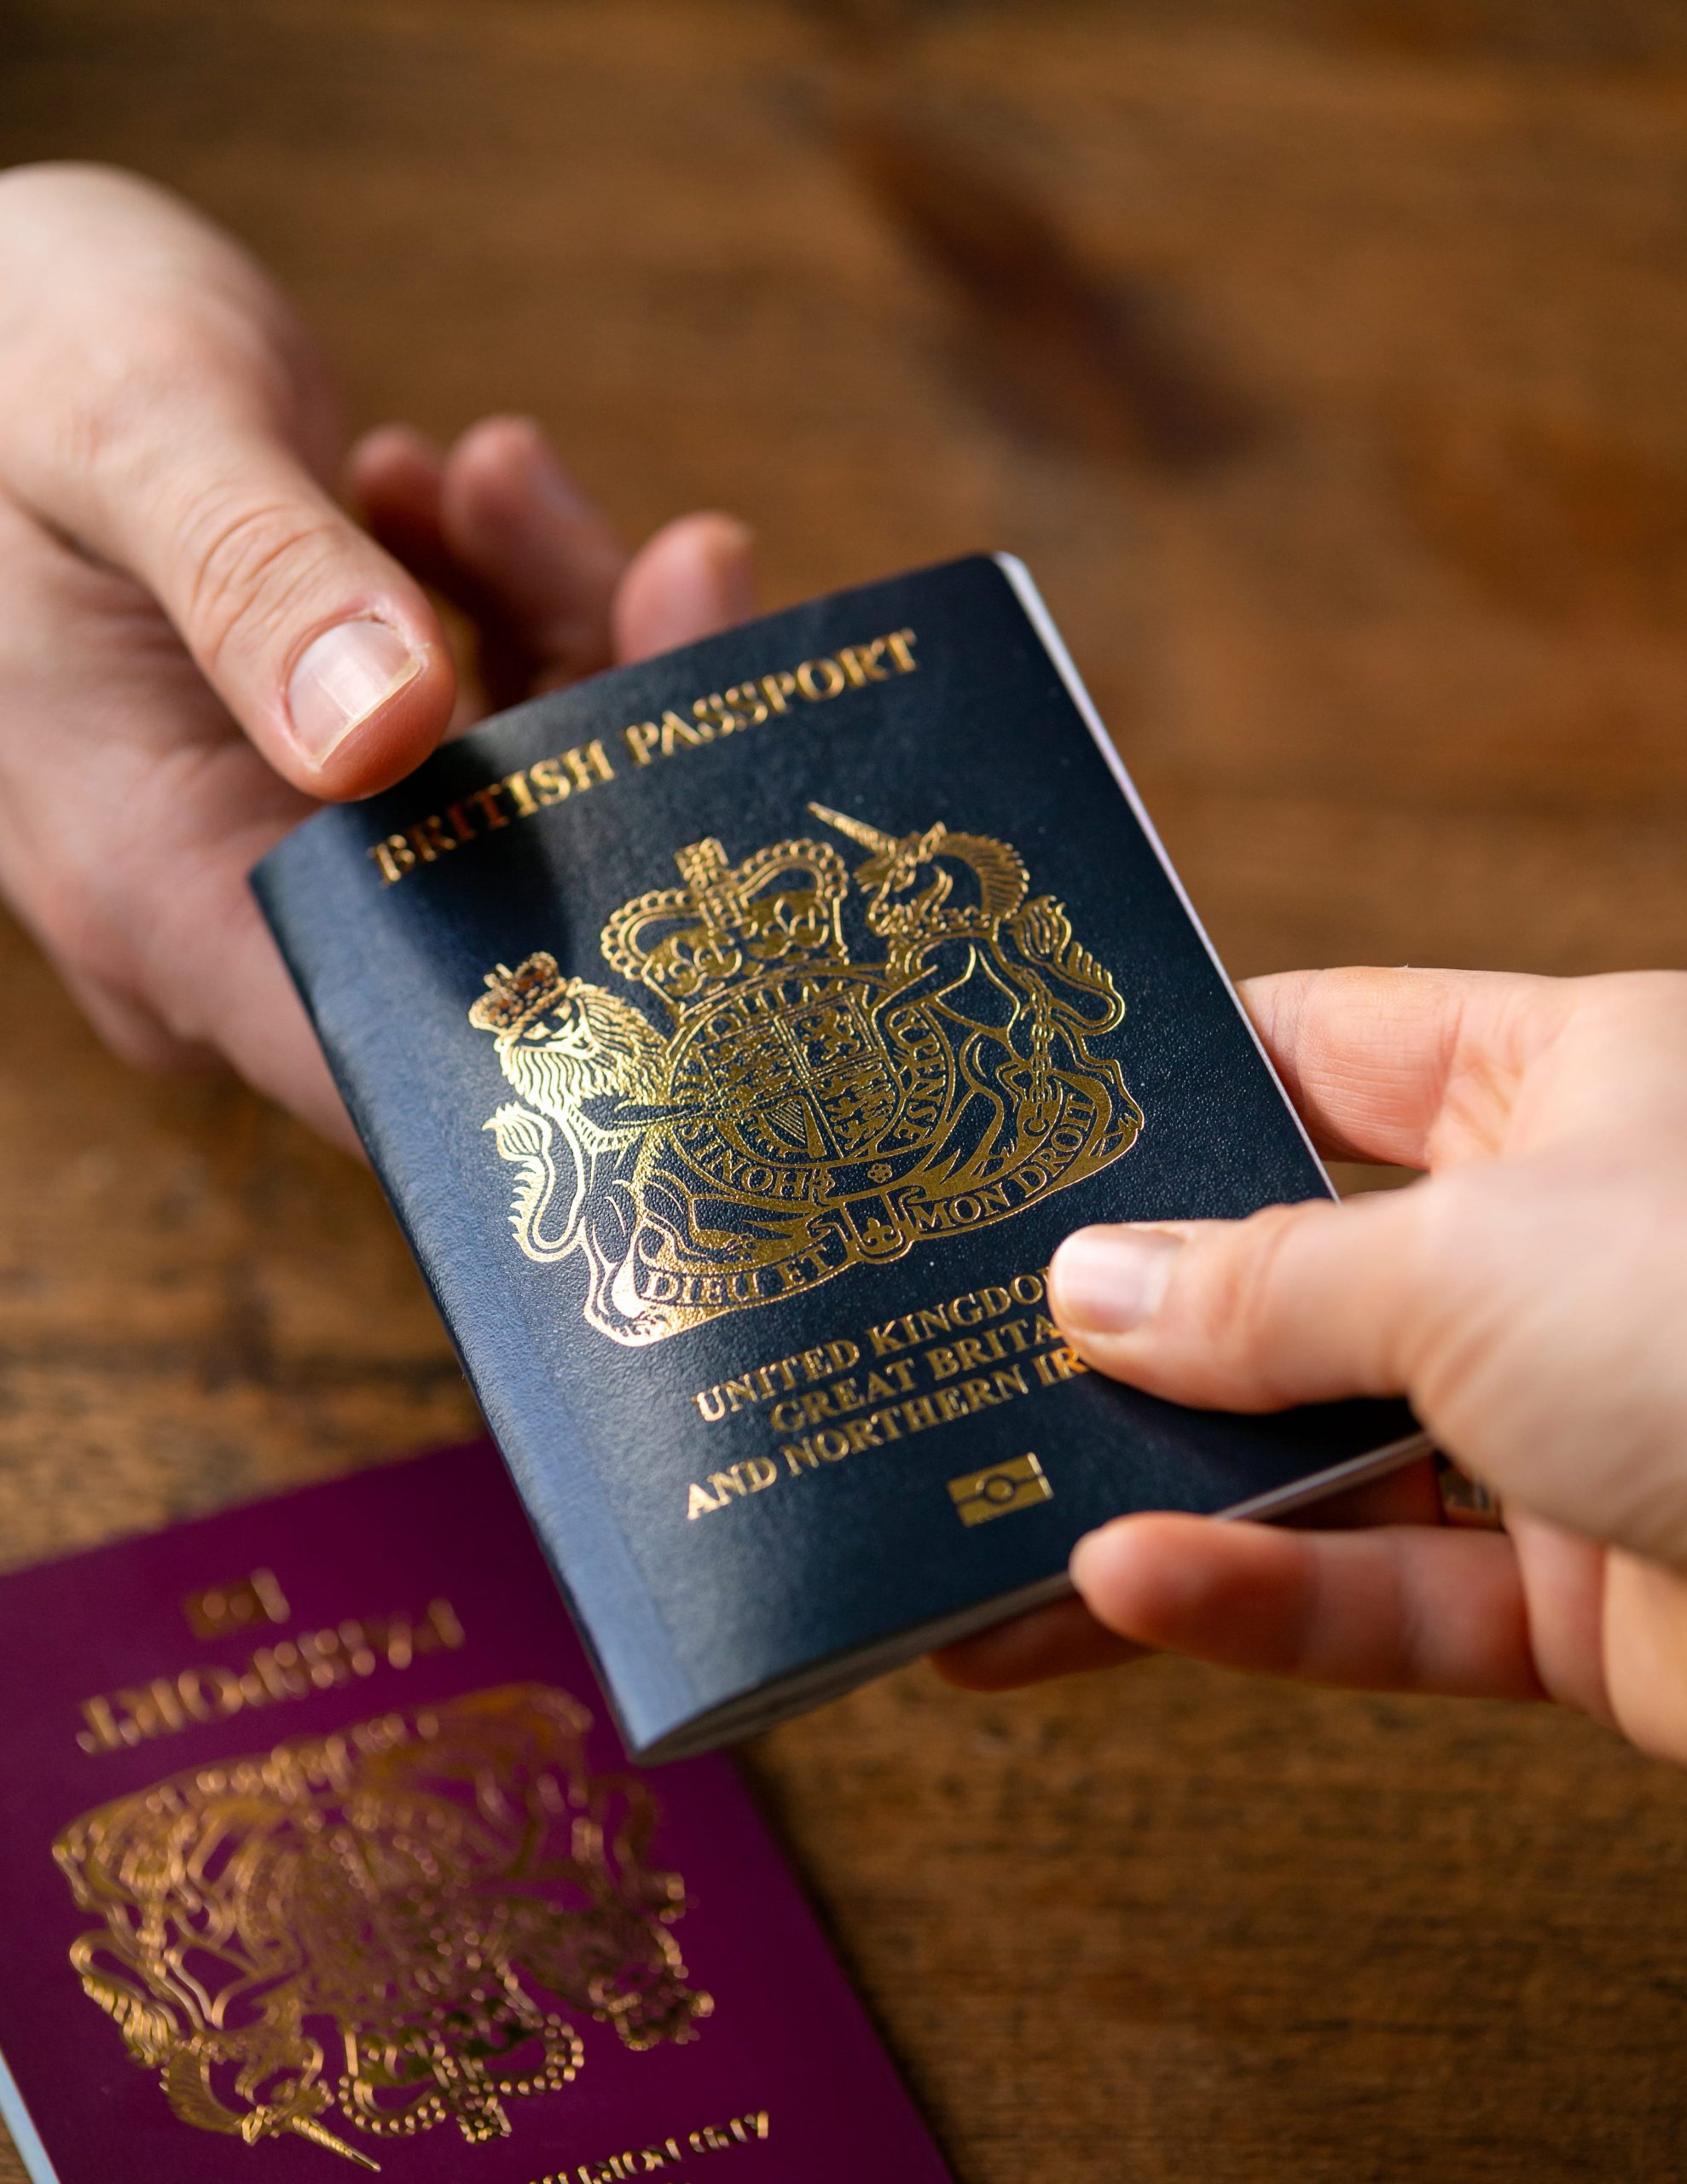 travel to europe on uk passport